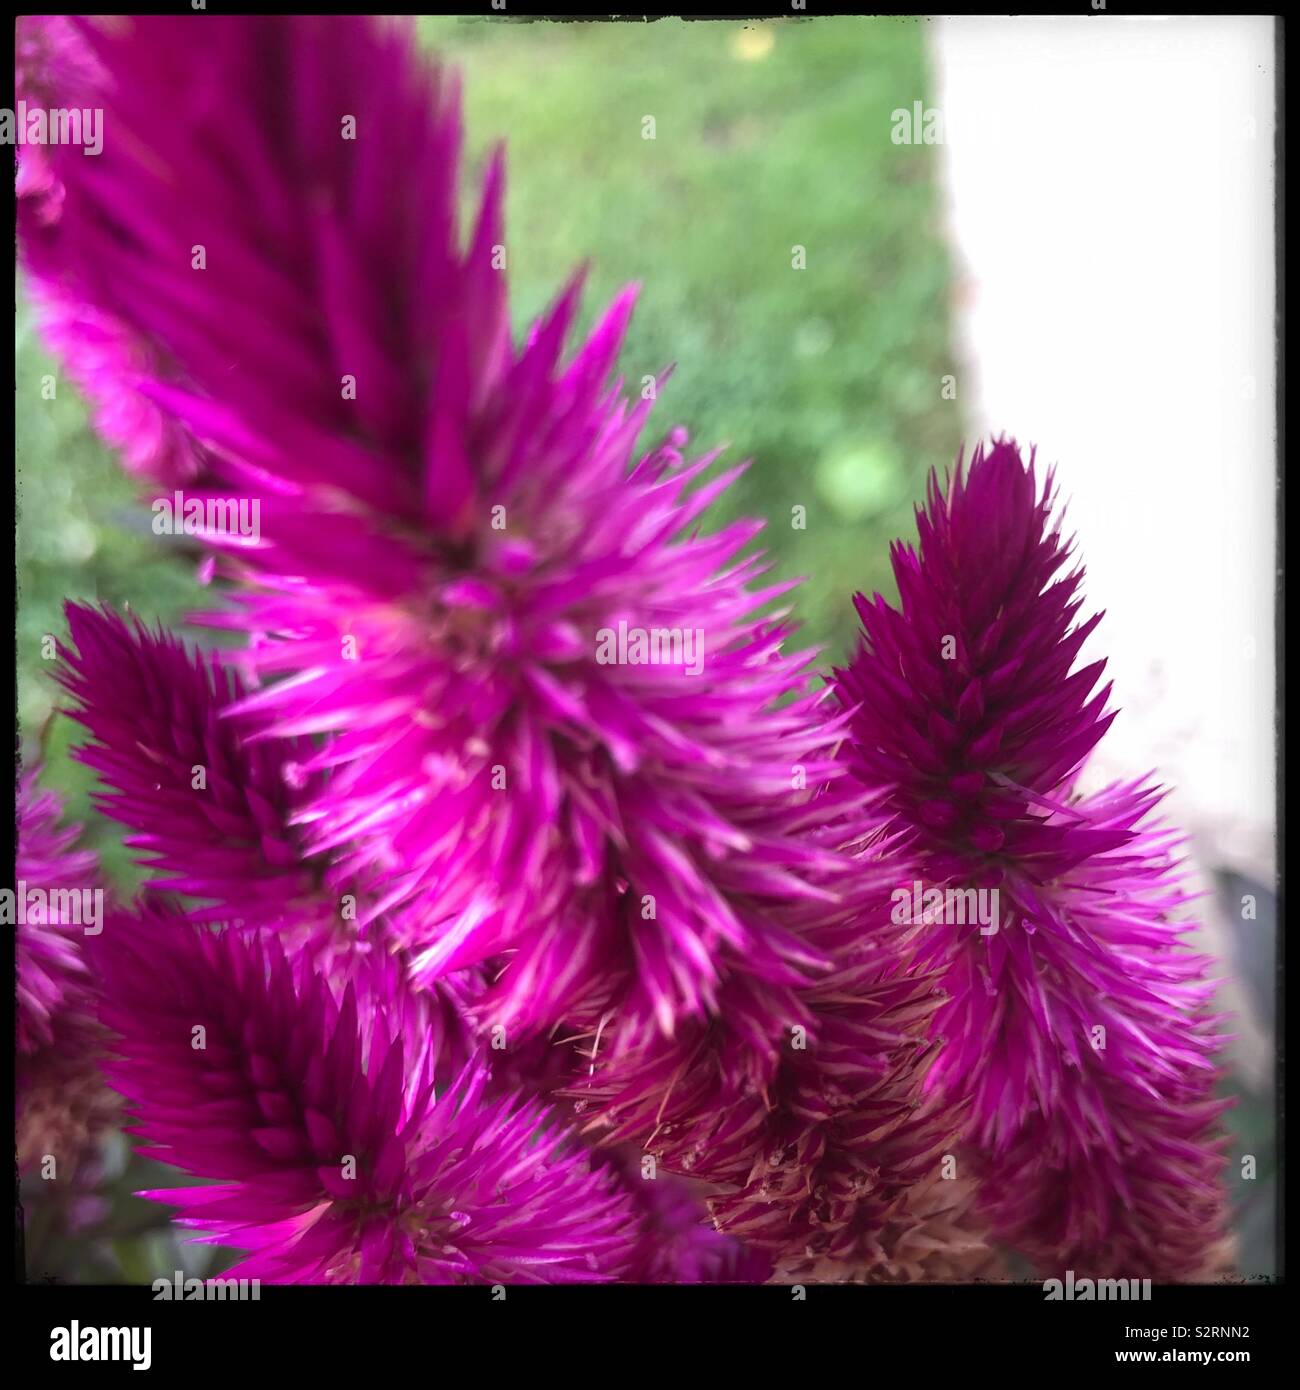 Pink bottle brush plant Stock Photo